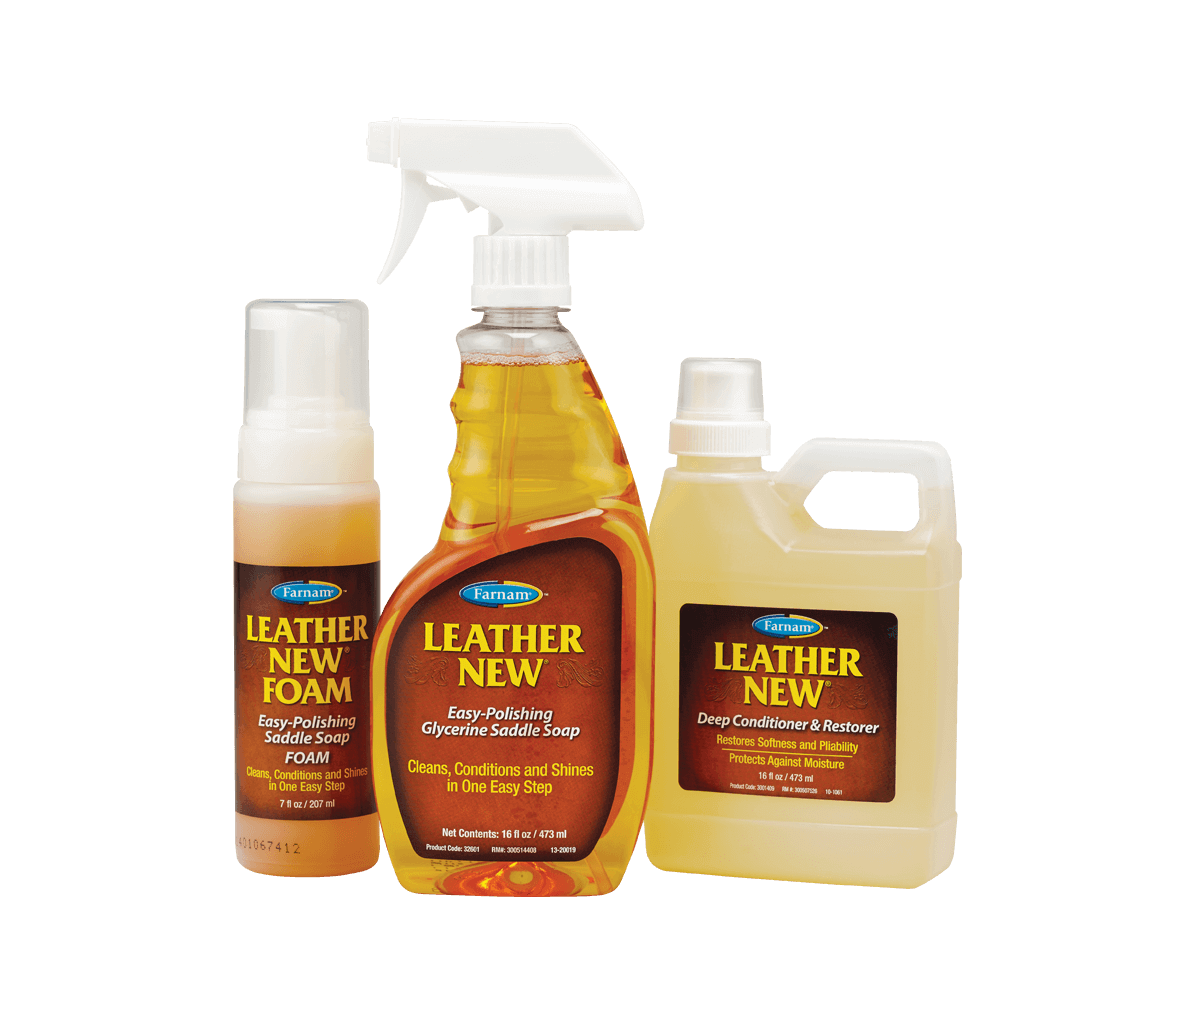 Leather New Easy-Polishing Glycerine Saddle Soap